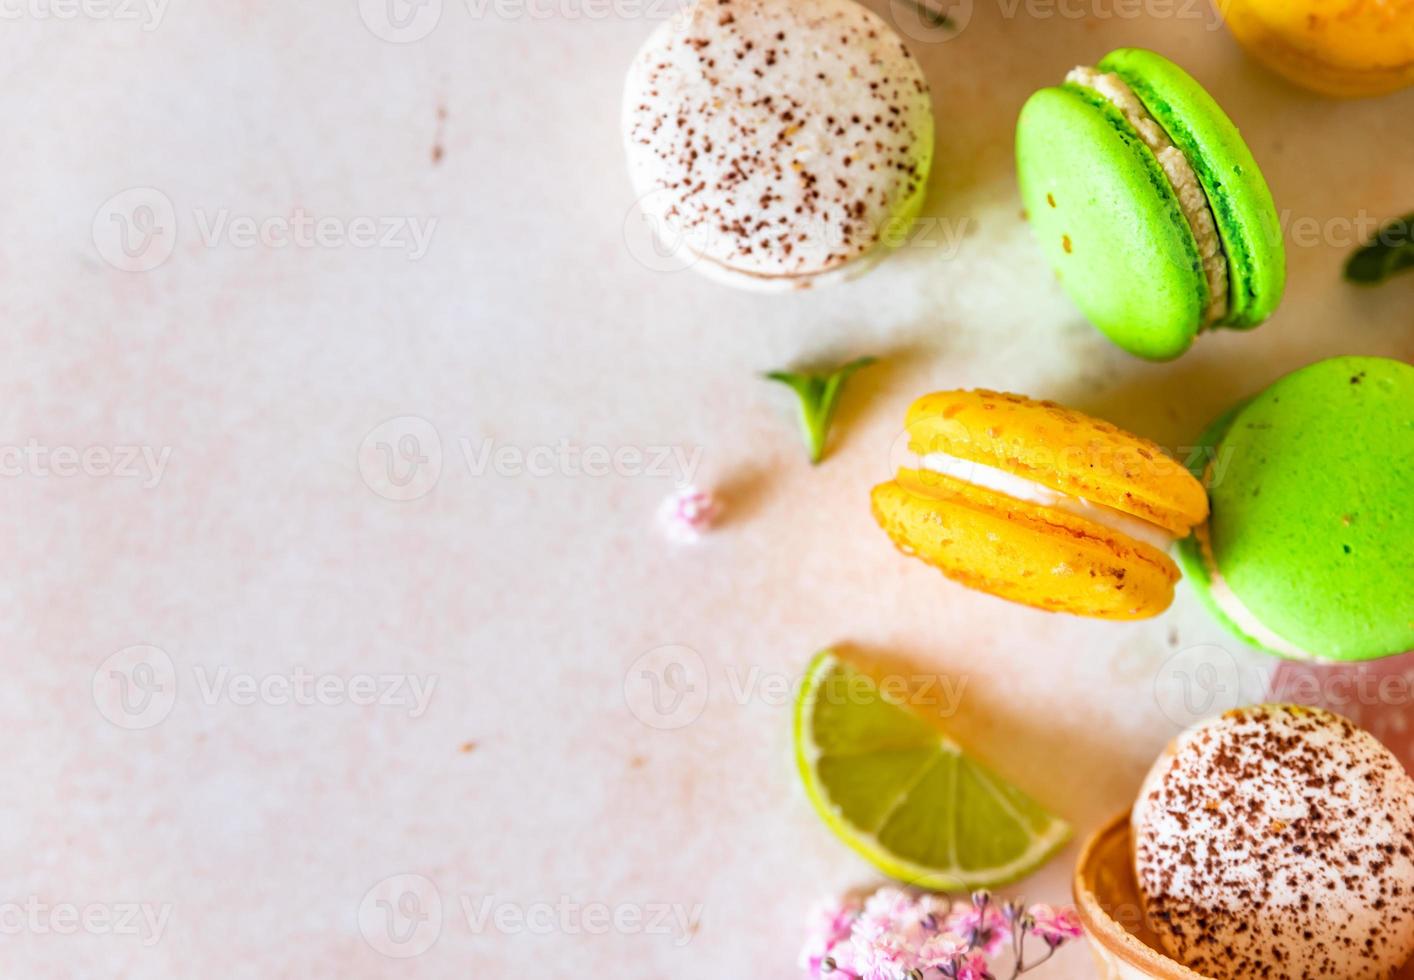 macarons français ou italiens colorés au citron vert, à la menthe et aux fleurs, fond de béton clair. fond de nourriture sucrée. photo